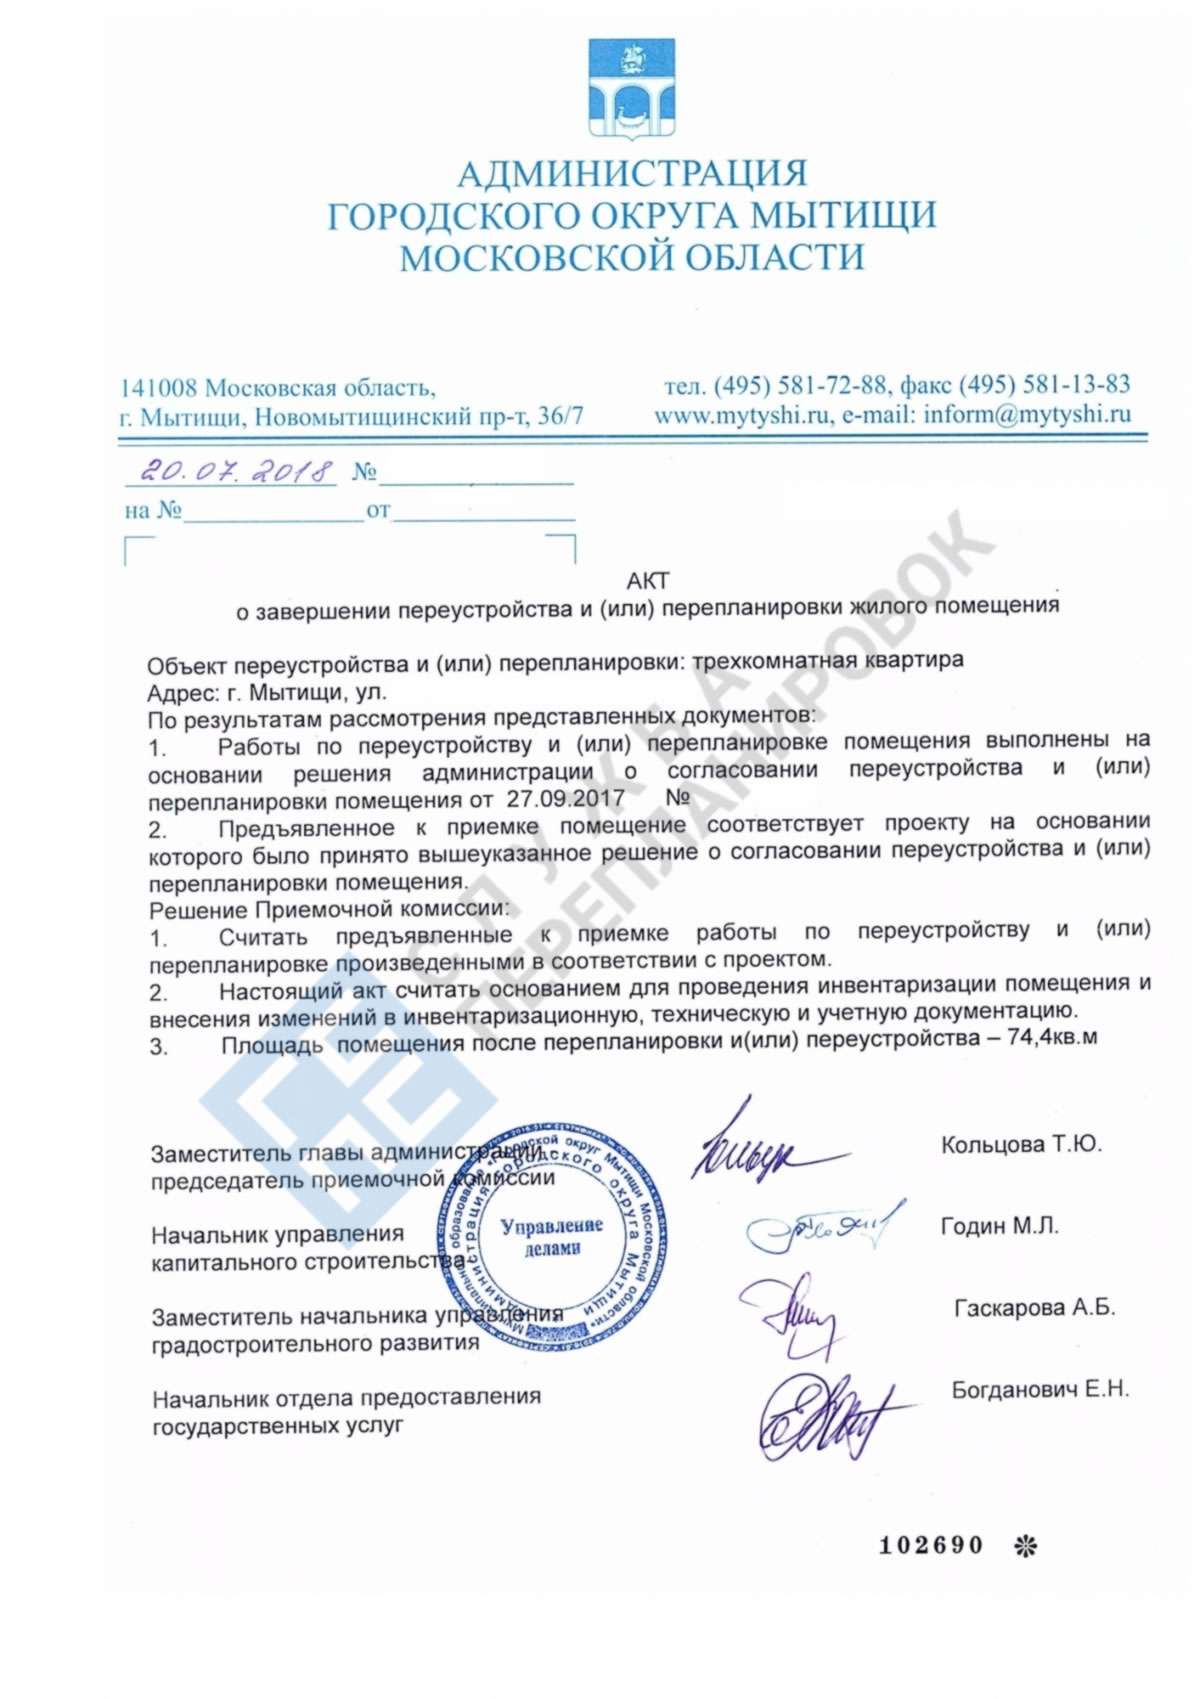 Акт о завершенном переустройстве администрация городского округа Мытищ